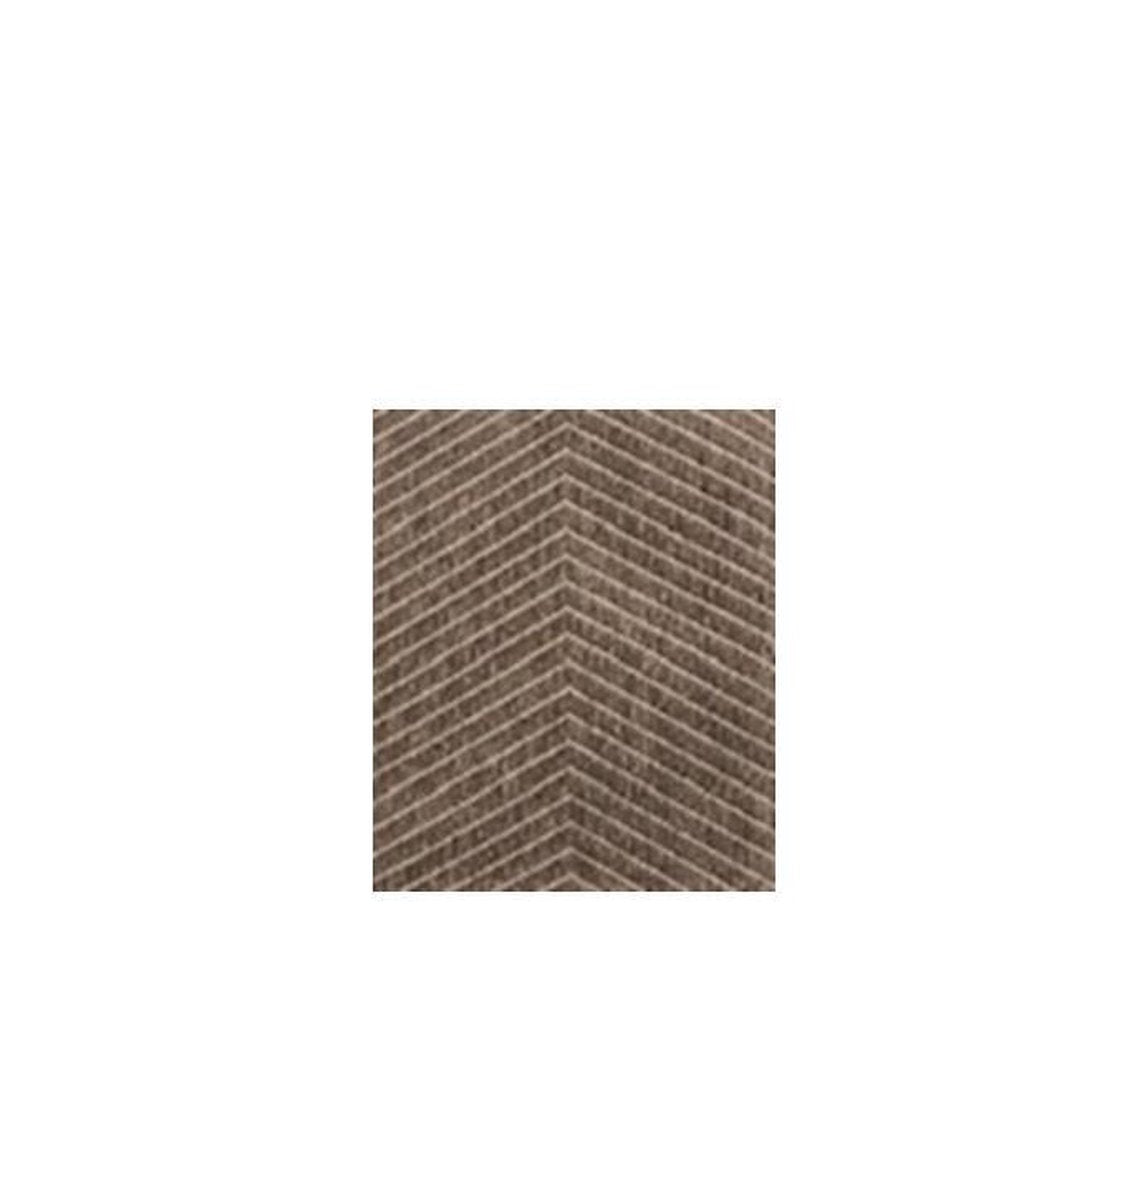 sisal Vloerkleed recto verso - tweezijdig vloerkleed - gratis antislip bijgeleverd - beige linen - 160/230 cm - tapijt - gestreept en visgraat